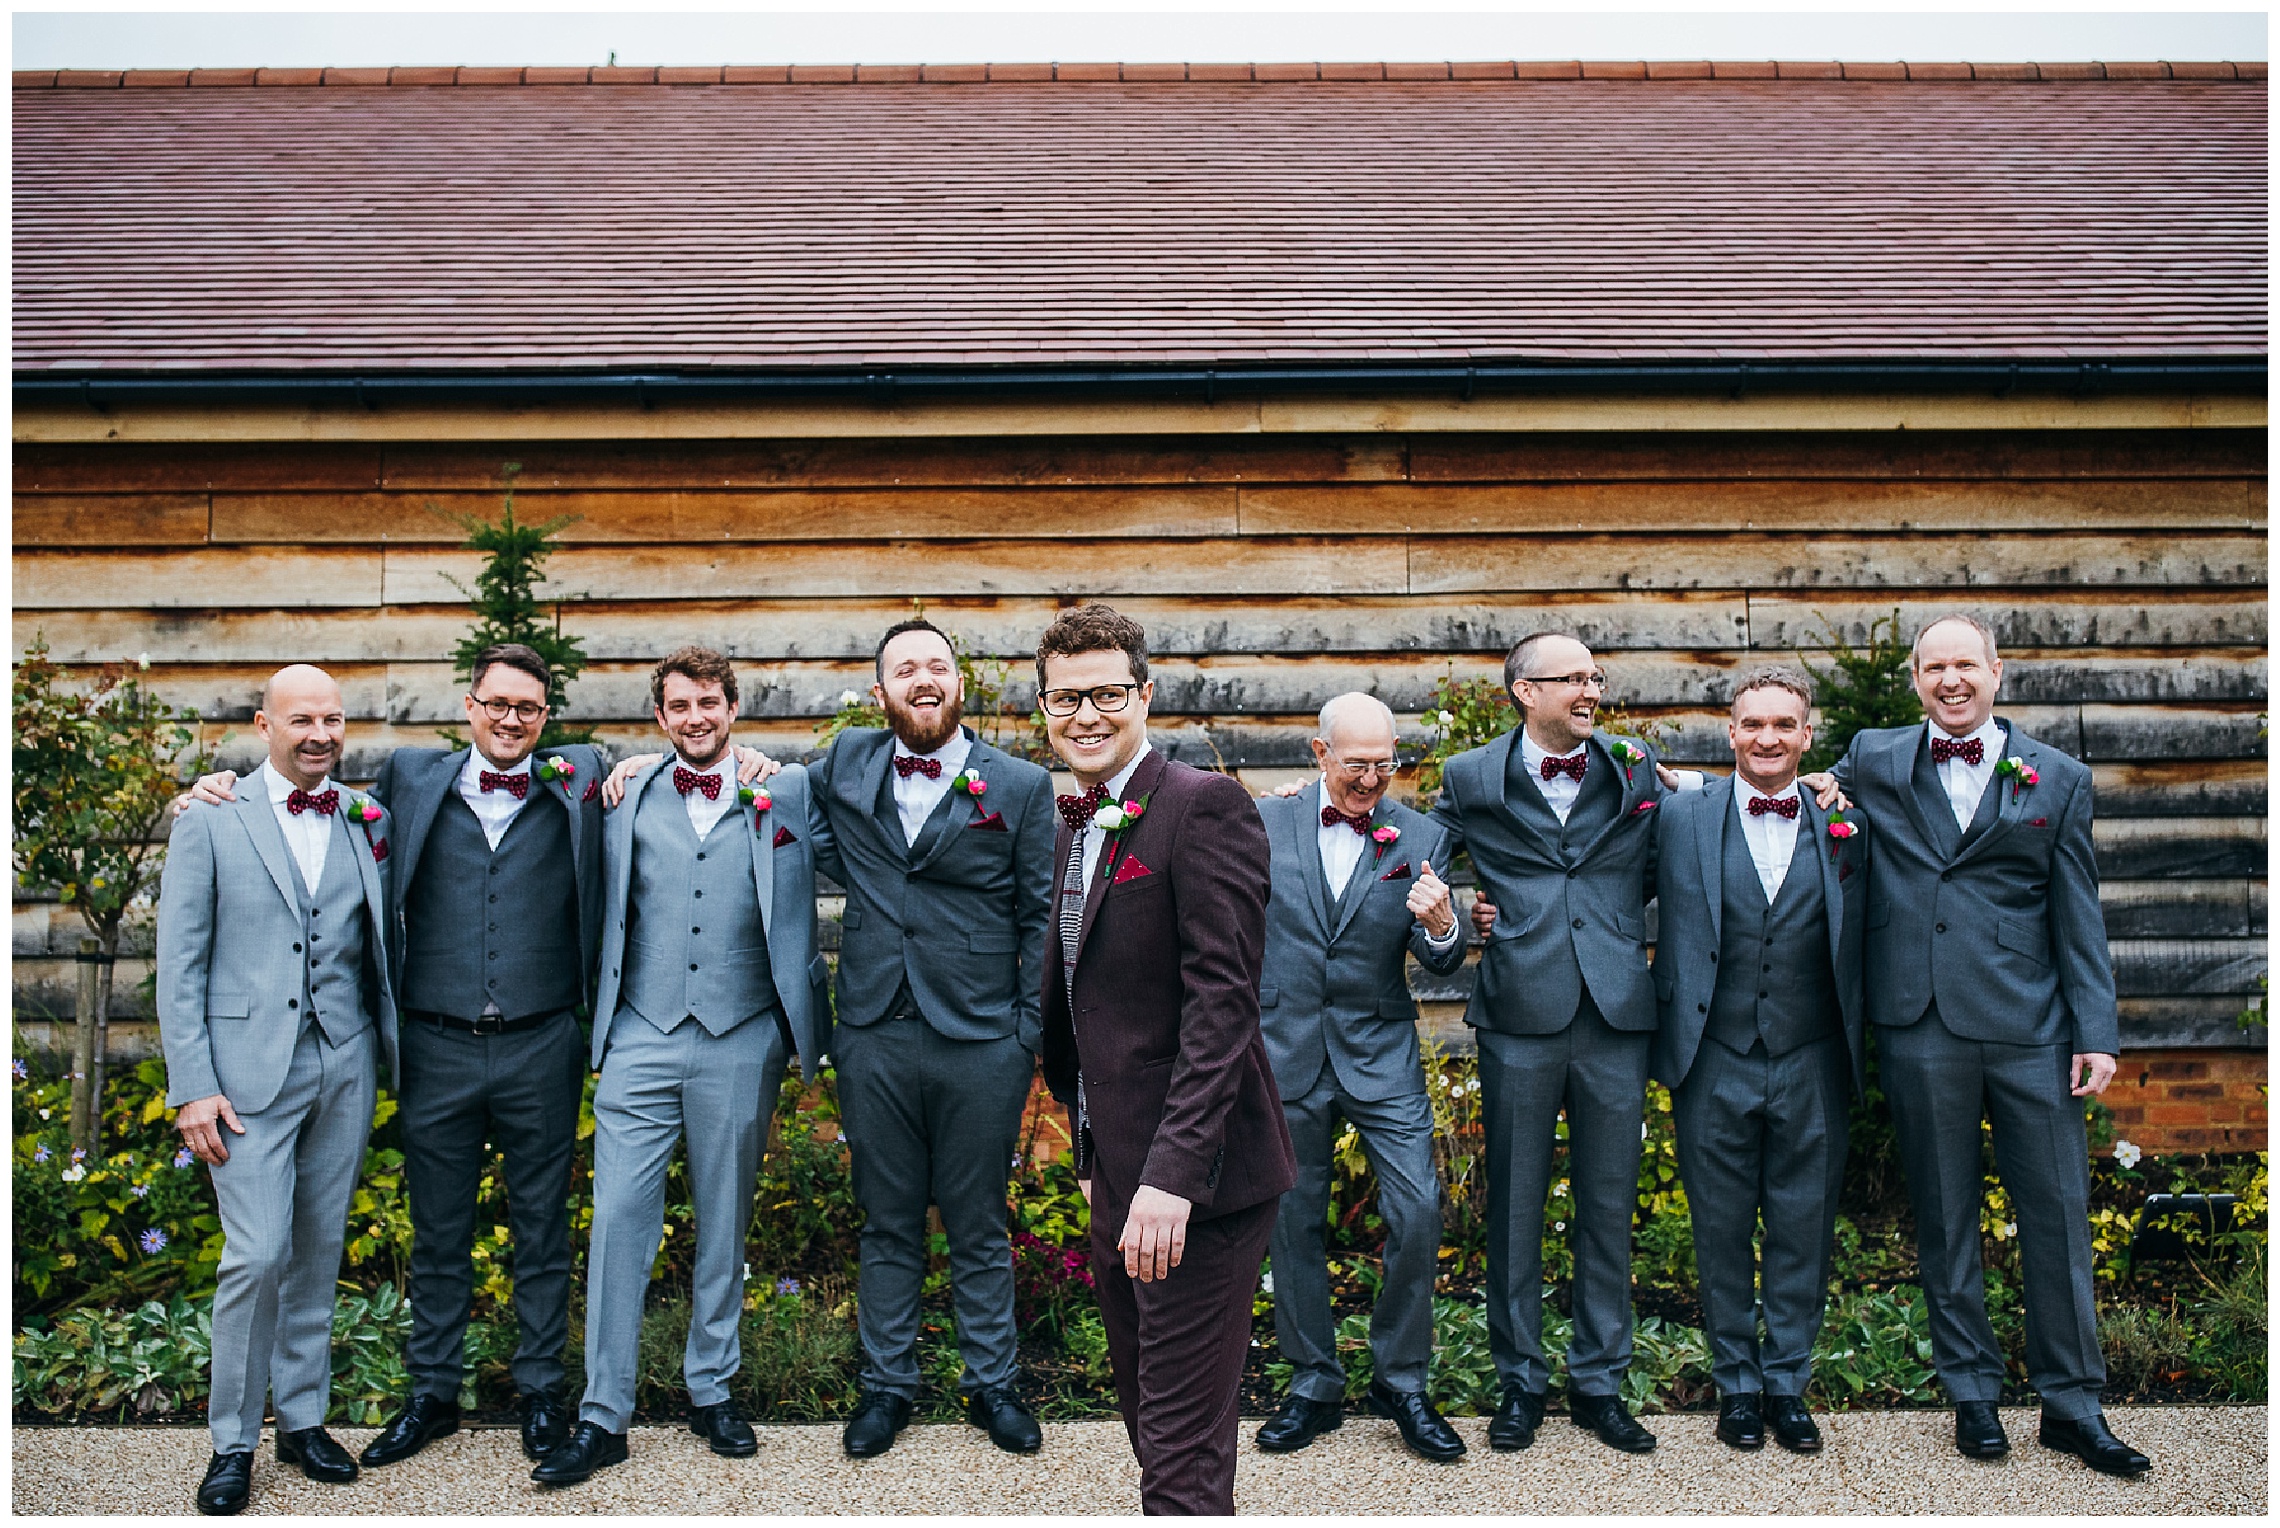 Groom in burgundy suit amongst groomsmen in grey suits, outside Bassmead barn wedding venue